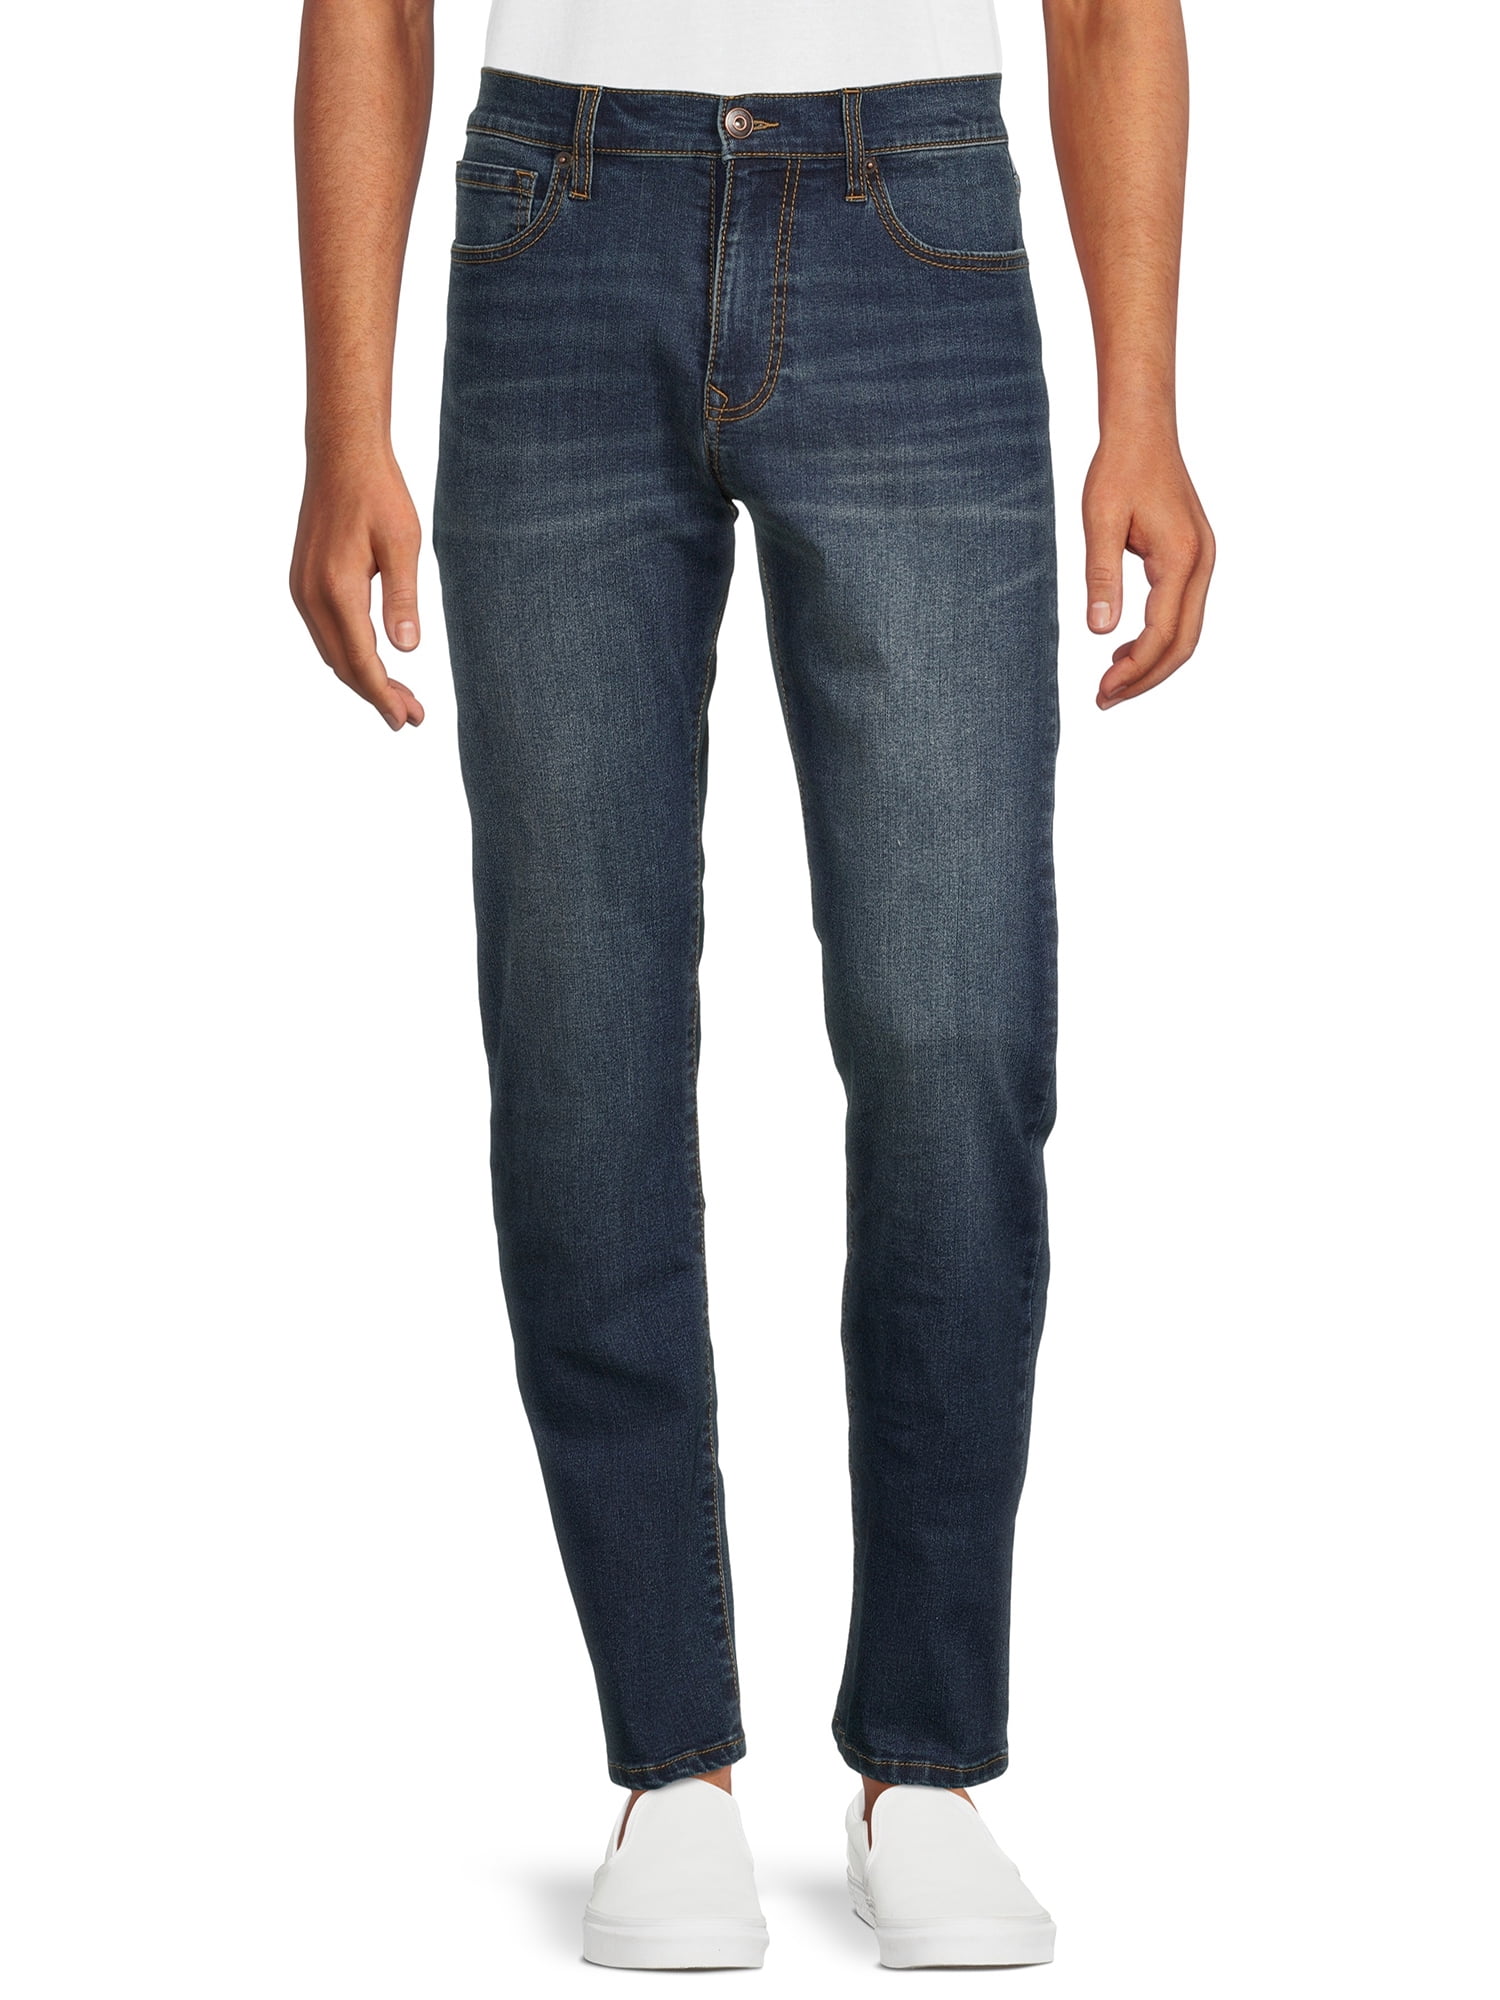 Lazer Pointe Men's Flex Denim Straight Fit Jeans, Waist Sizes 30